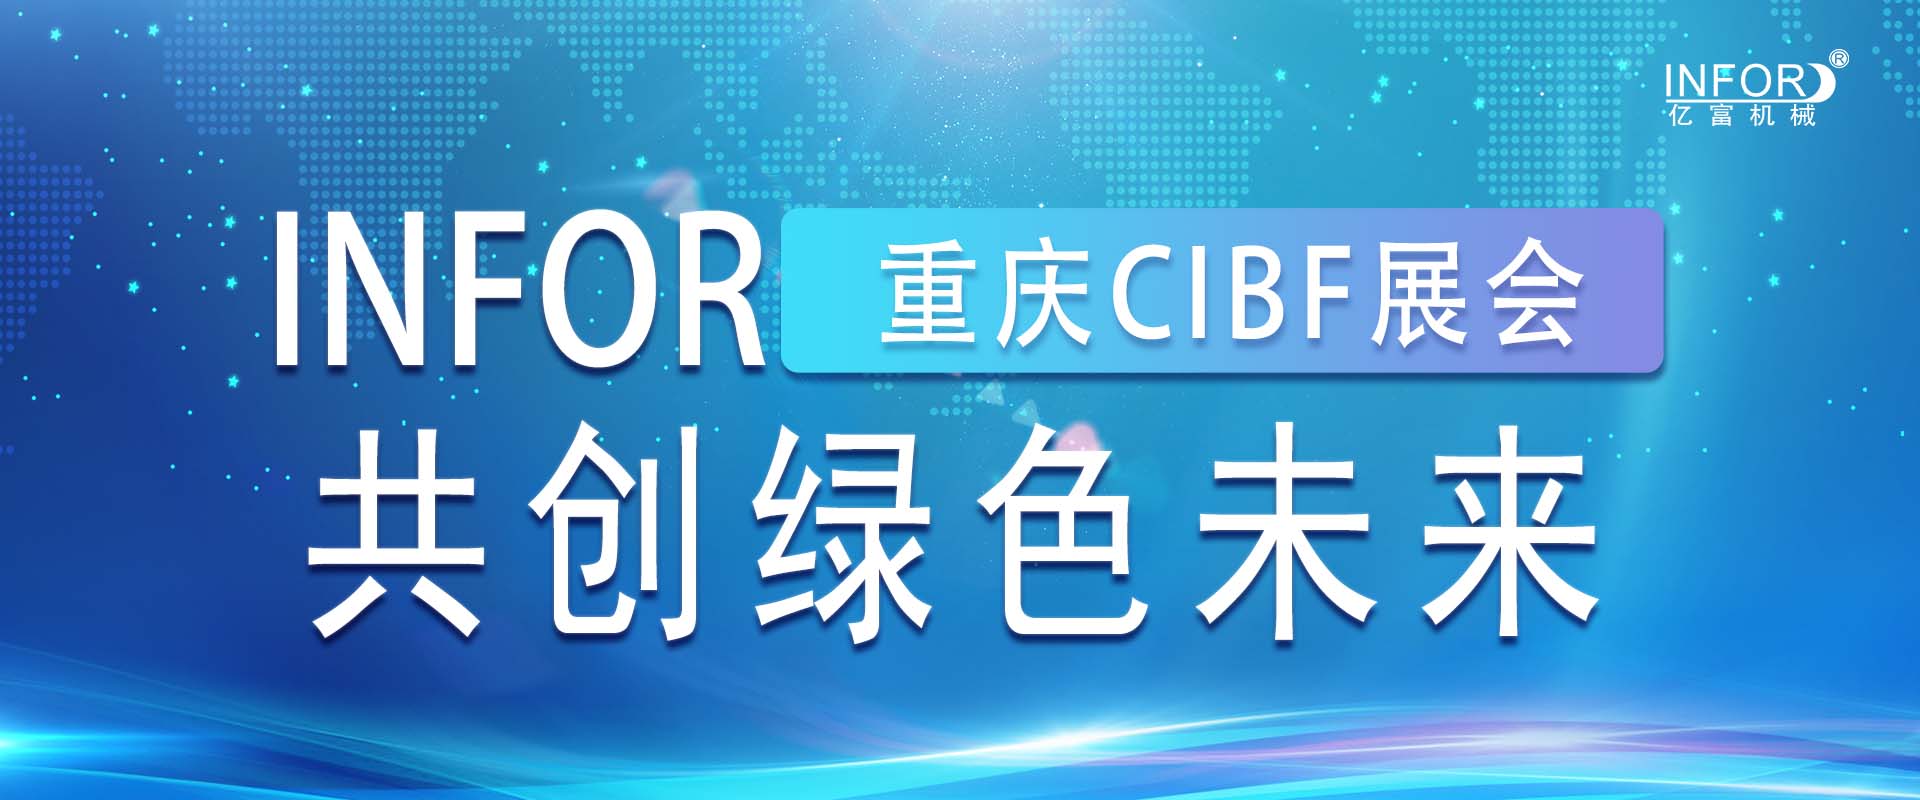 亿富闪耀重庆CIBF展会 共创绿色未来